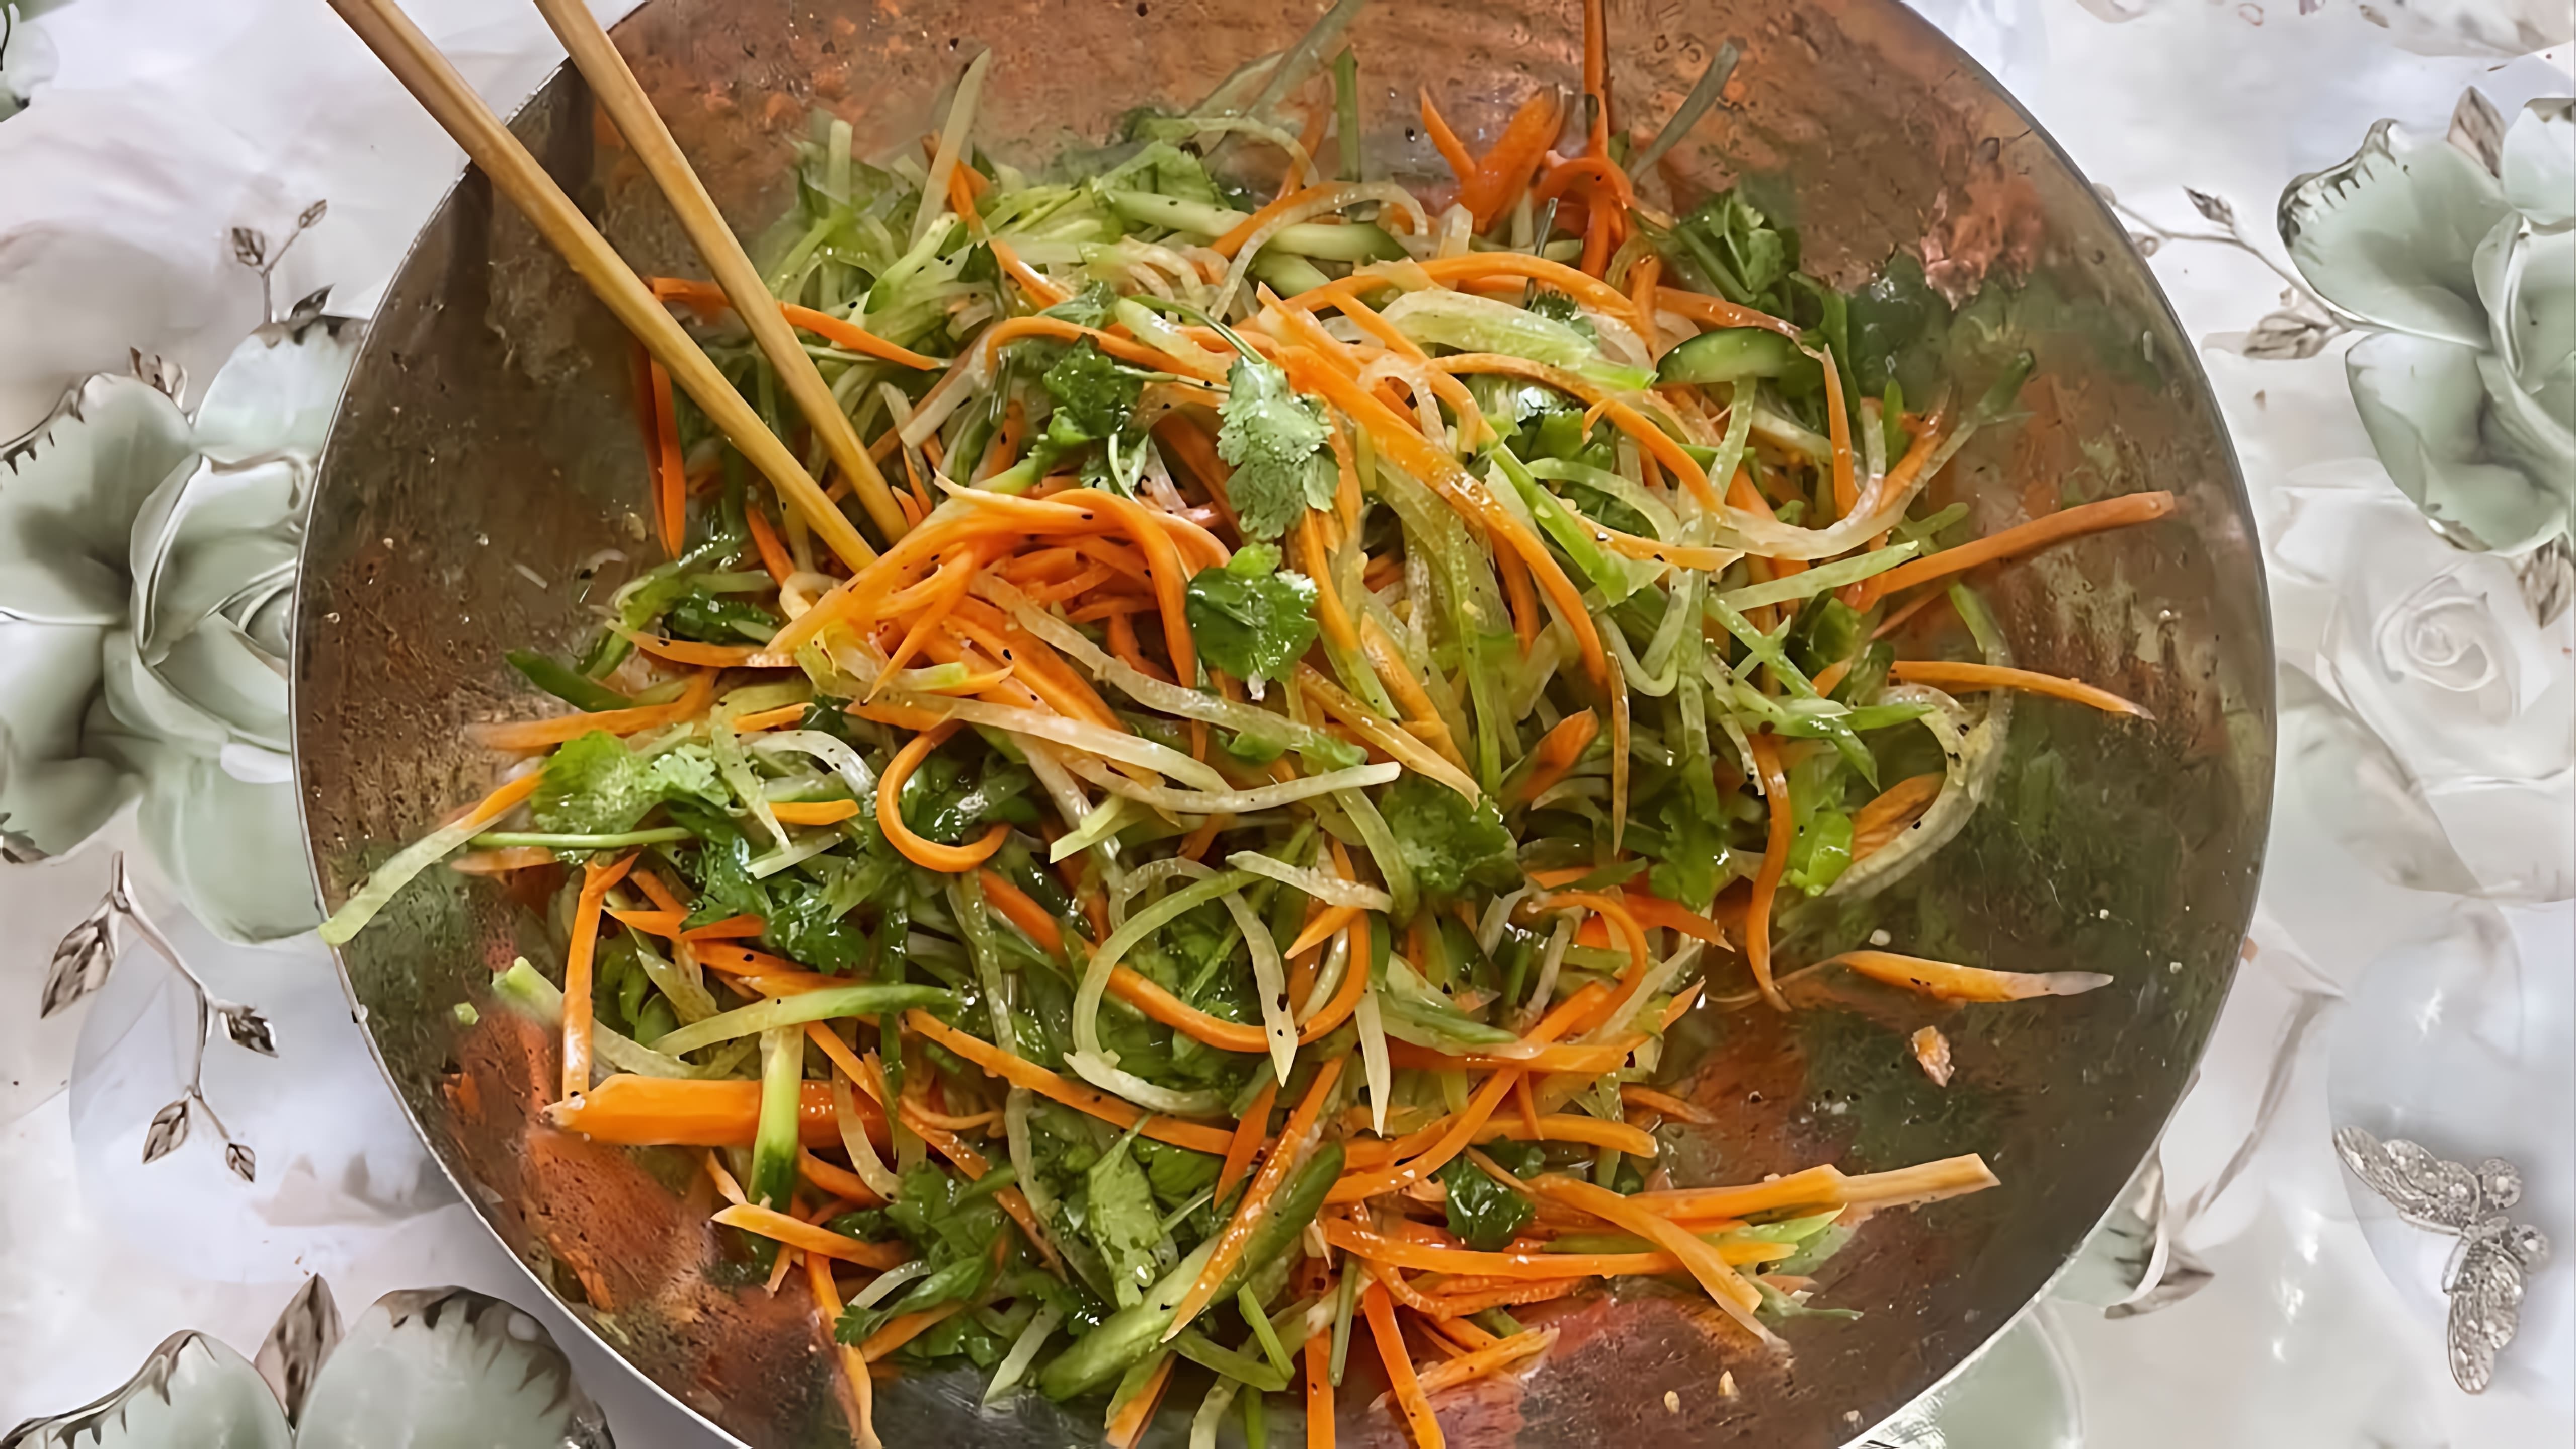 В этом видео демонстрируется процесс приготовления салата из зеленой редьки, моркови и огурца